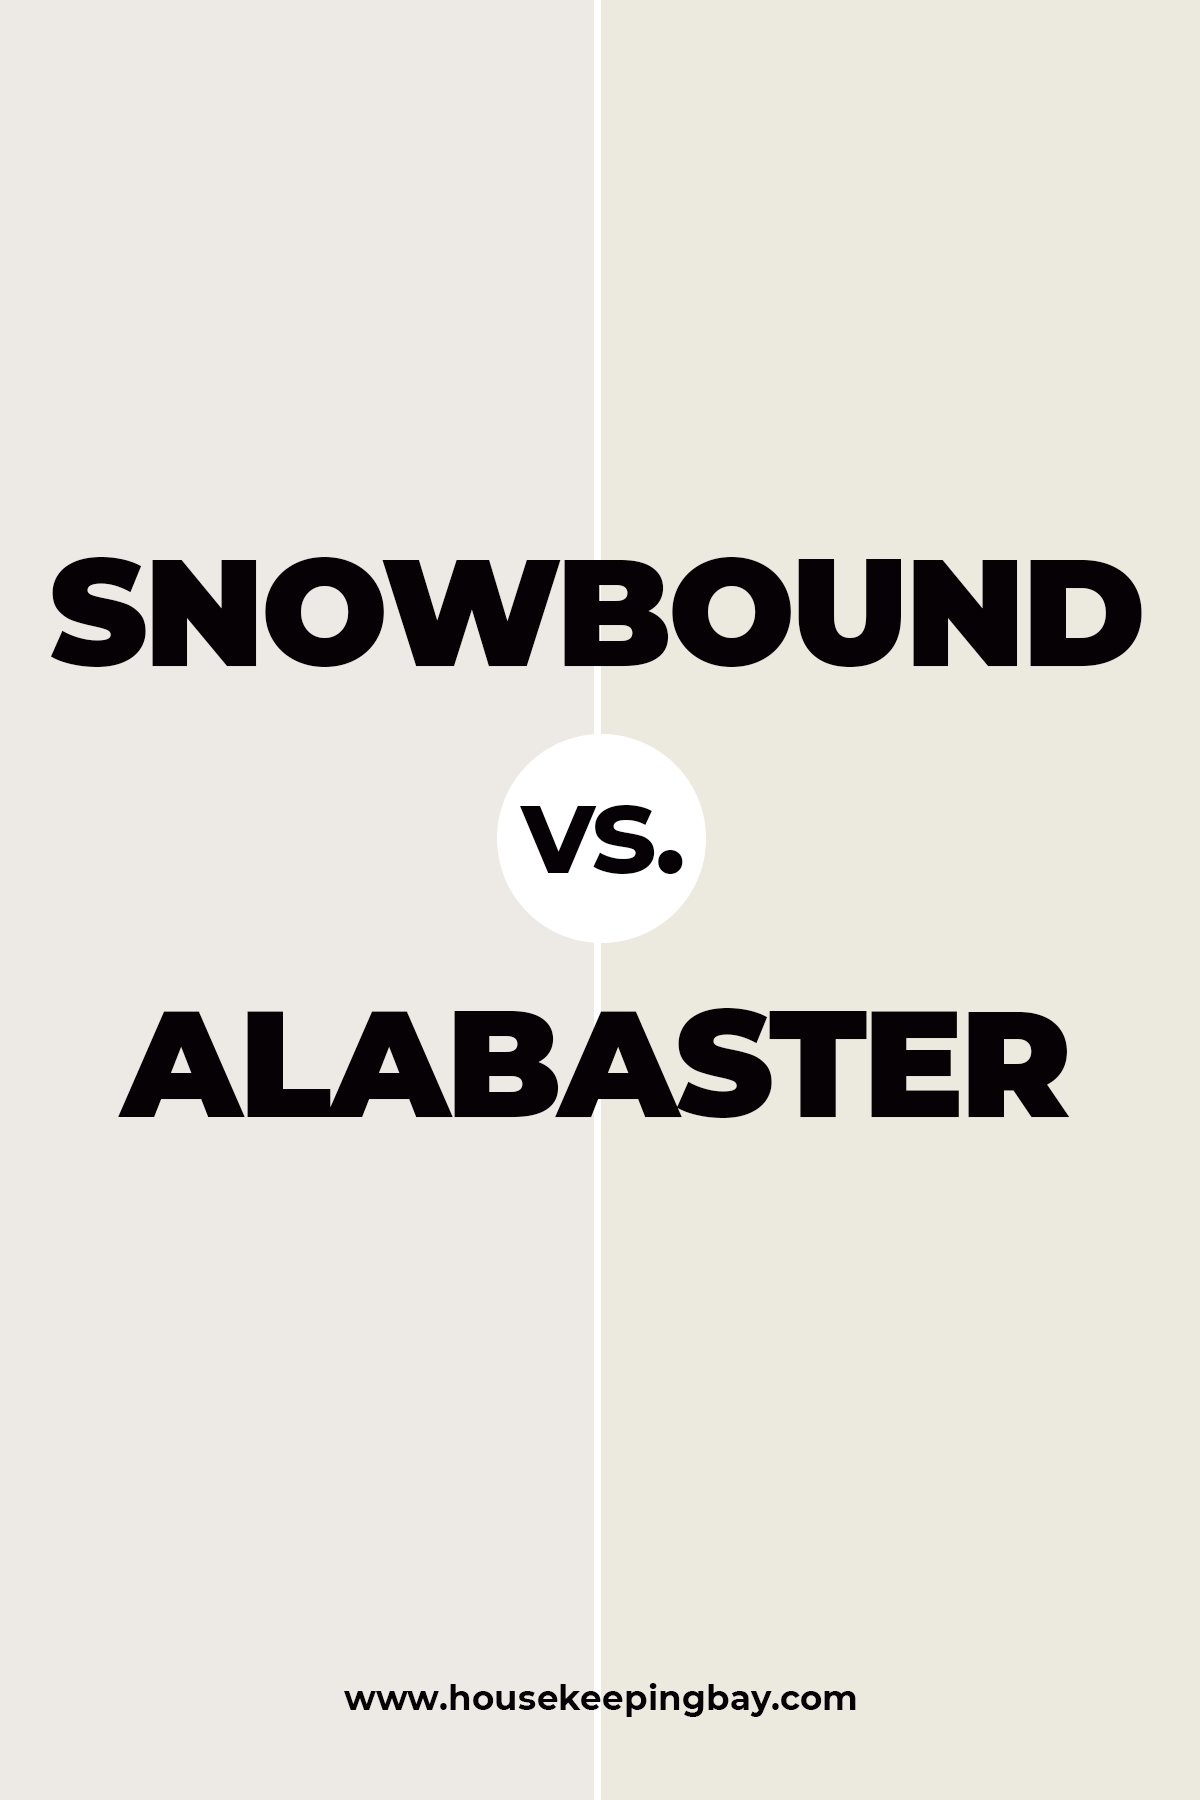 Snowbound vs. Alabaster